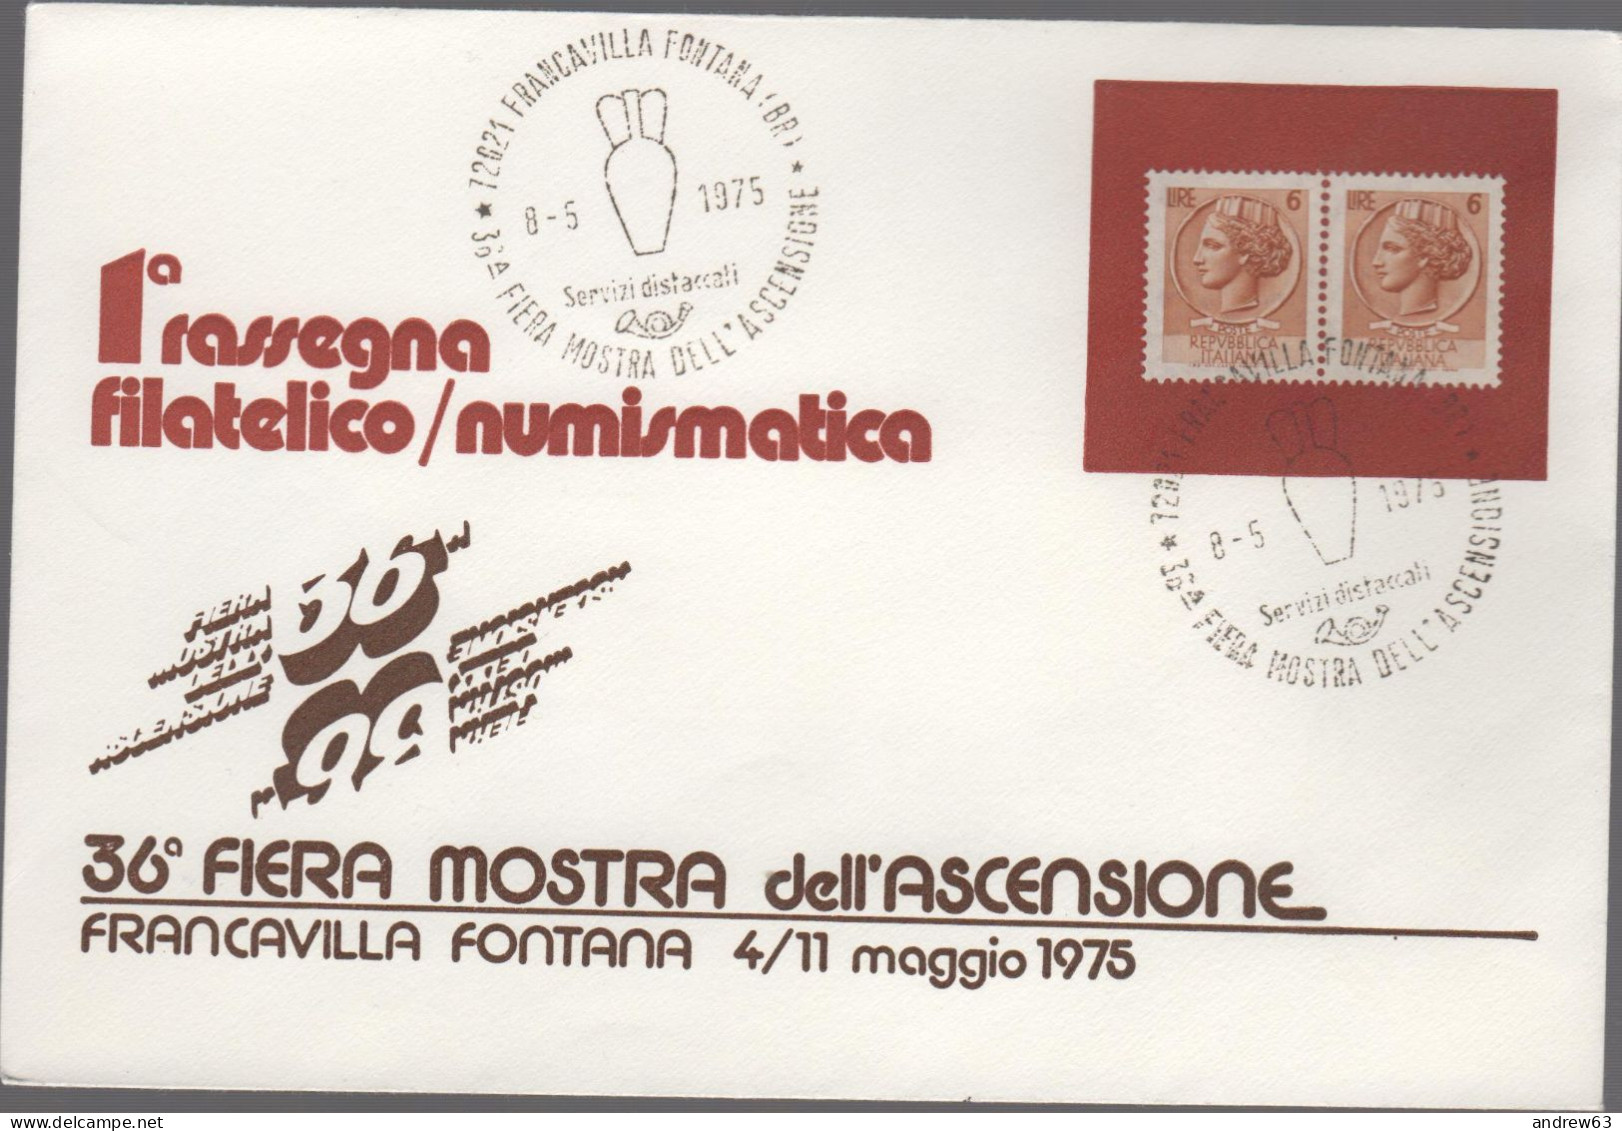 ITALIA - ITALIE - ITALY - 1975 - 2x 6 Siracusana + Annullo 36a Fiera Dell'Ascensione - 1a Rassegna Filatelico/Numismatic - Expositions Philatéliques